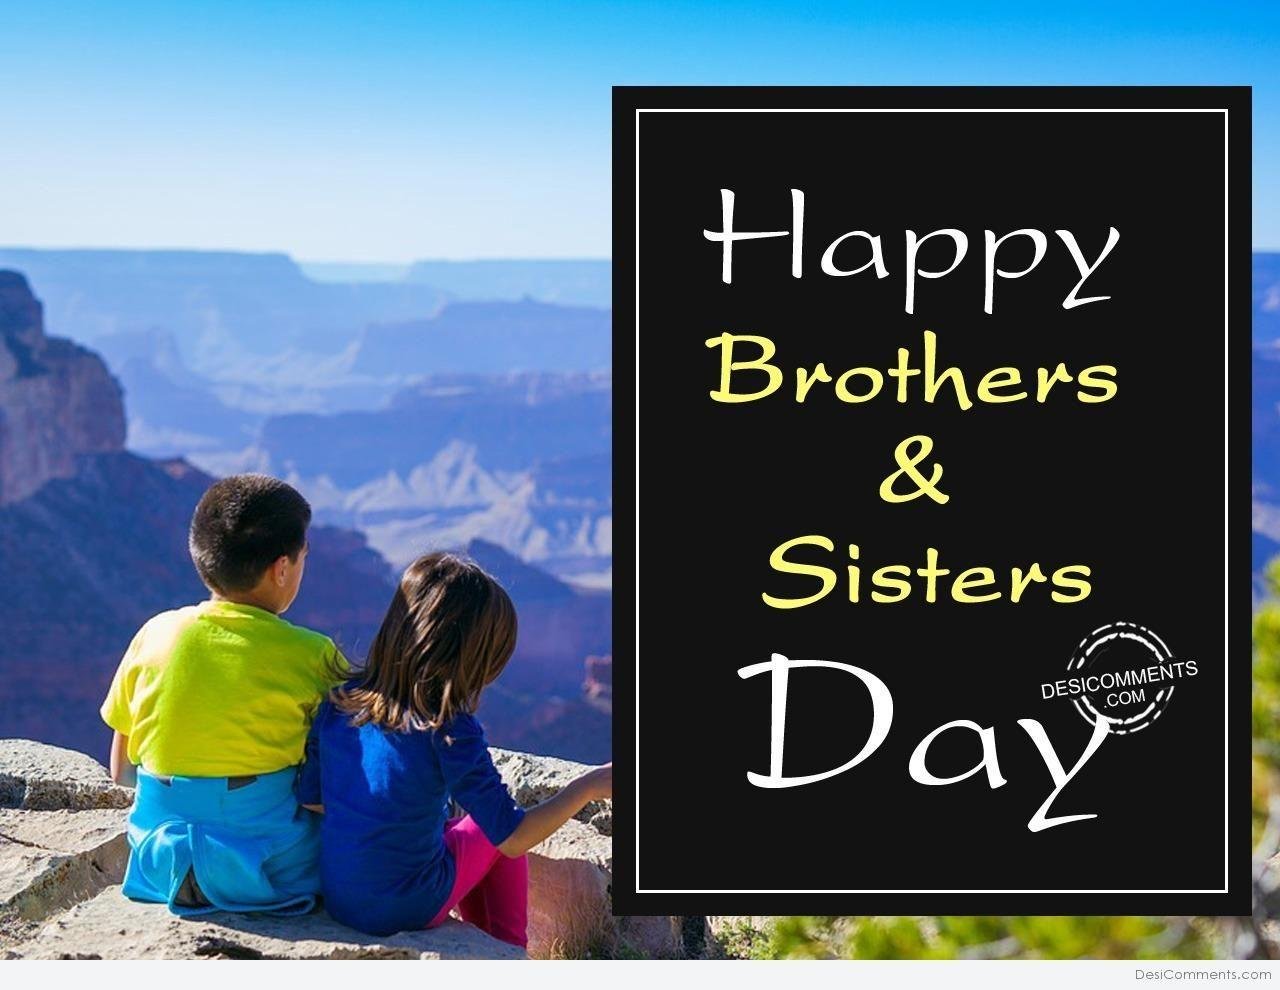 Money sister brother. День братьев и сестер. Европейский день братьев и сестер. С праздником братьев и сестер. День братьев.